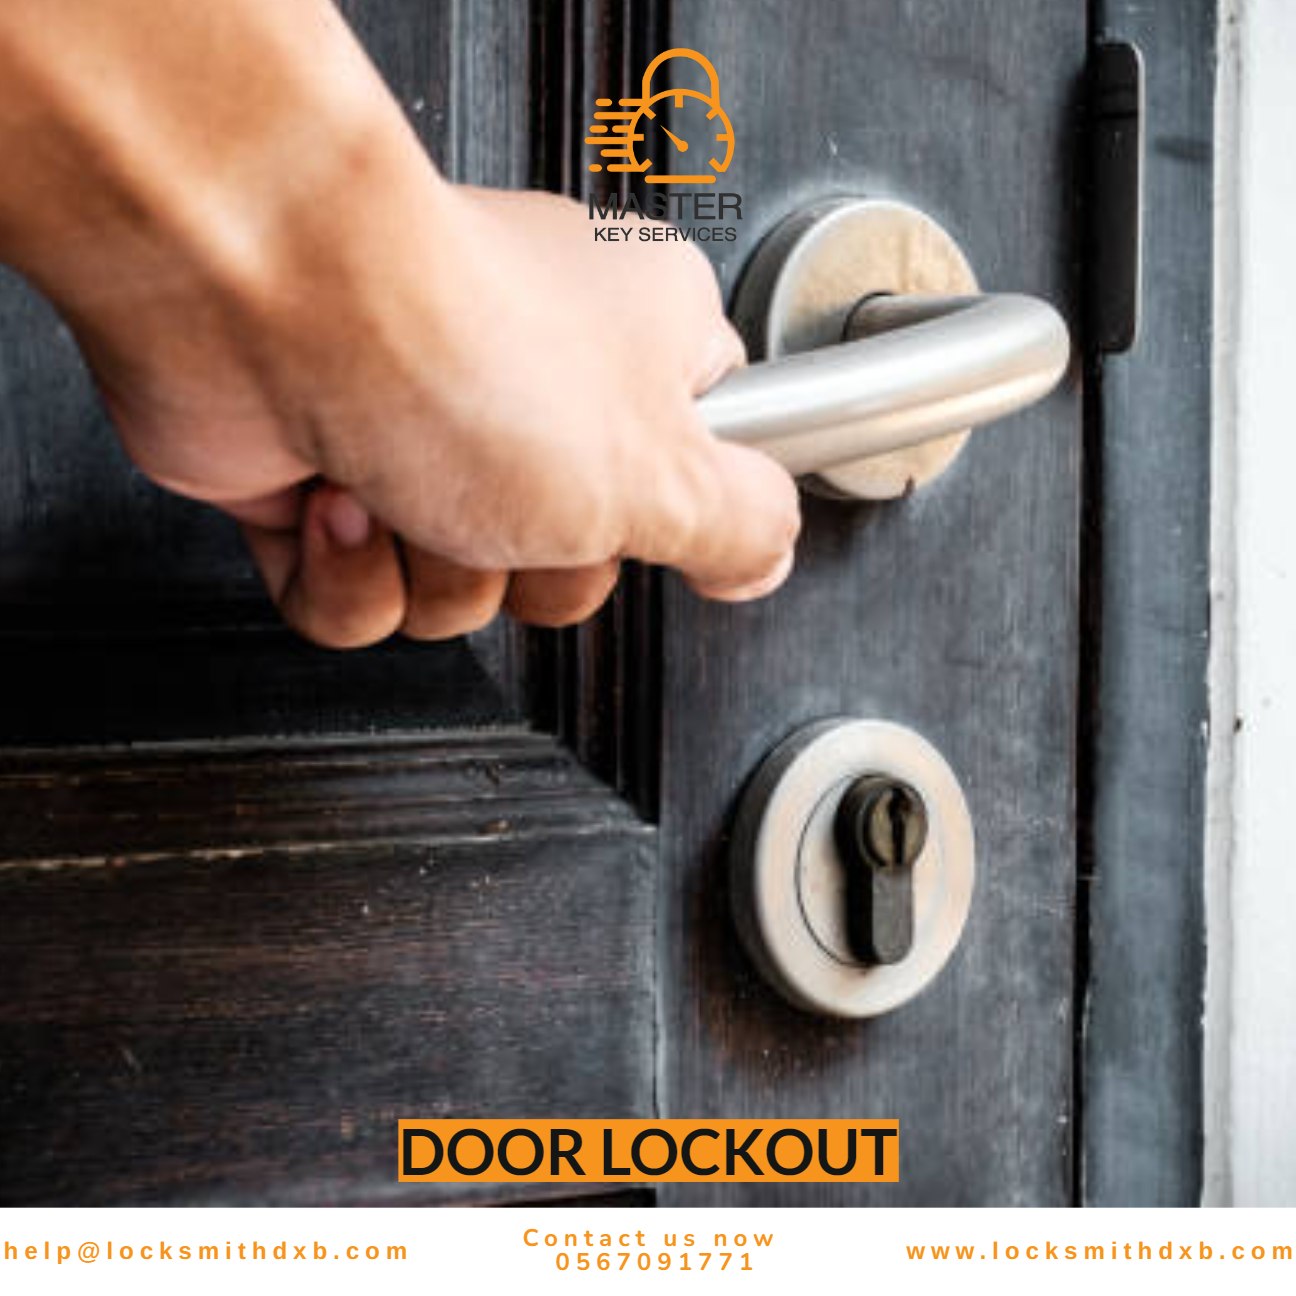 Door lockout